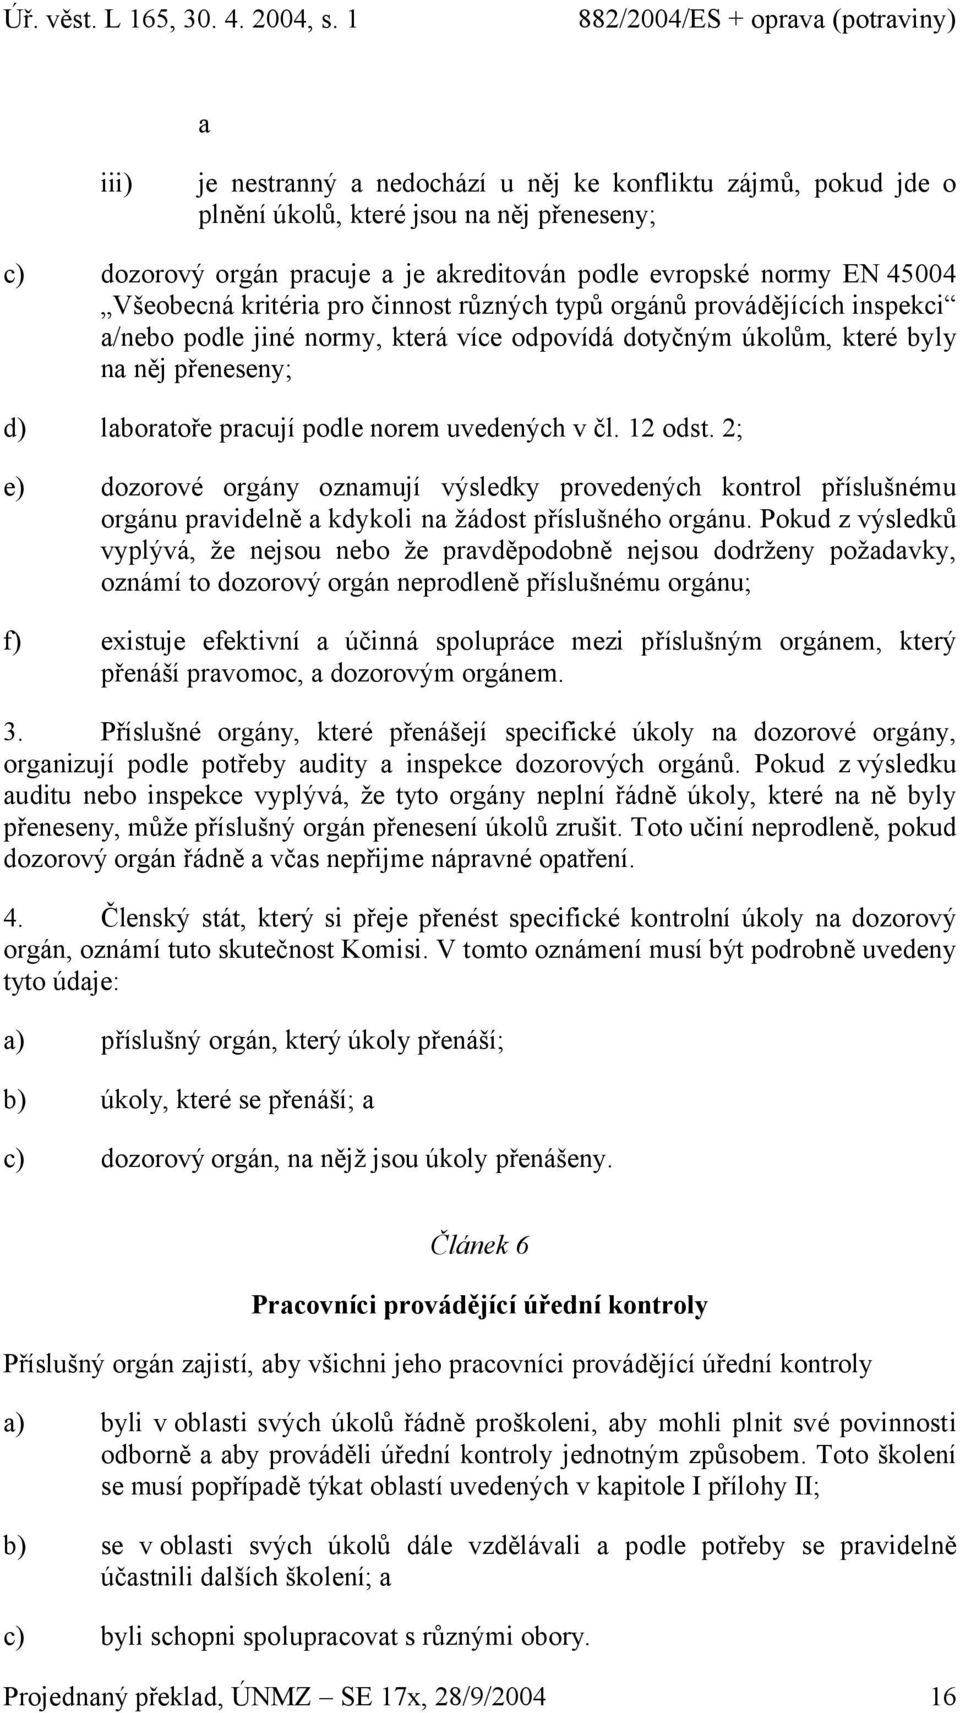 v čl. 12 odst. 2; e) dozorové orgány oznamují výsledky provedených kontrol příslušnému orgánu pravidelně a kdykoli na žádost příslušného orgánu.